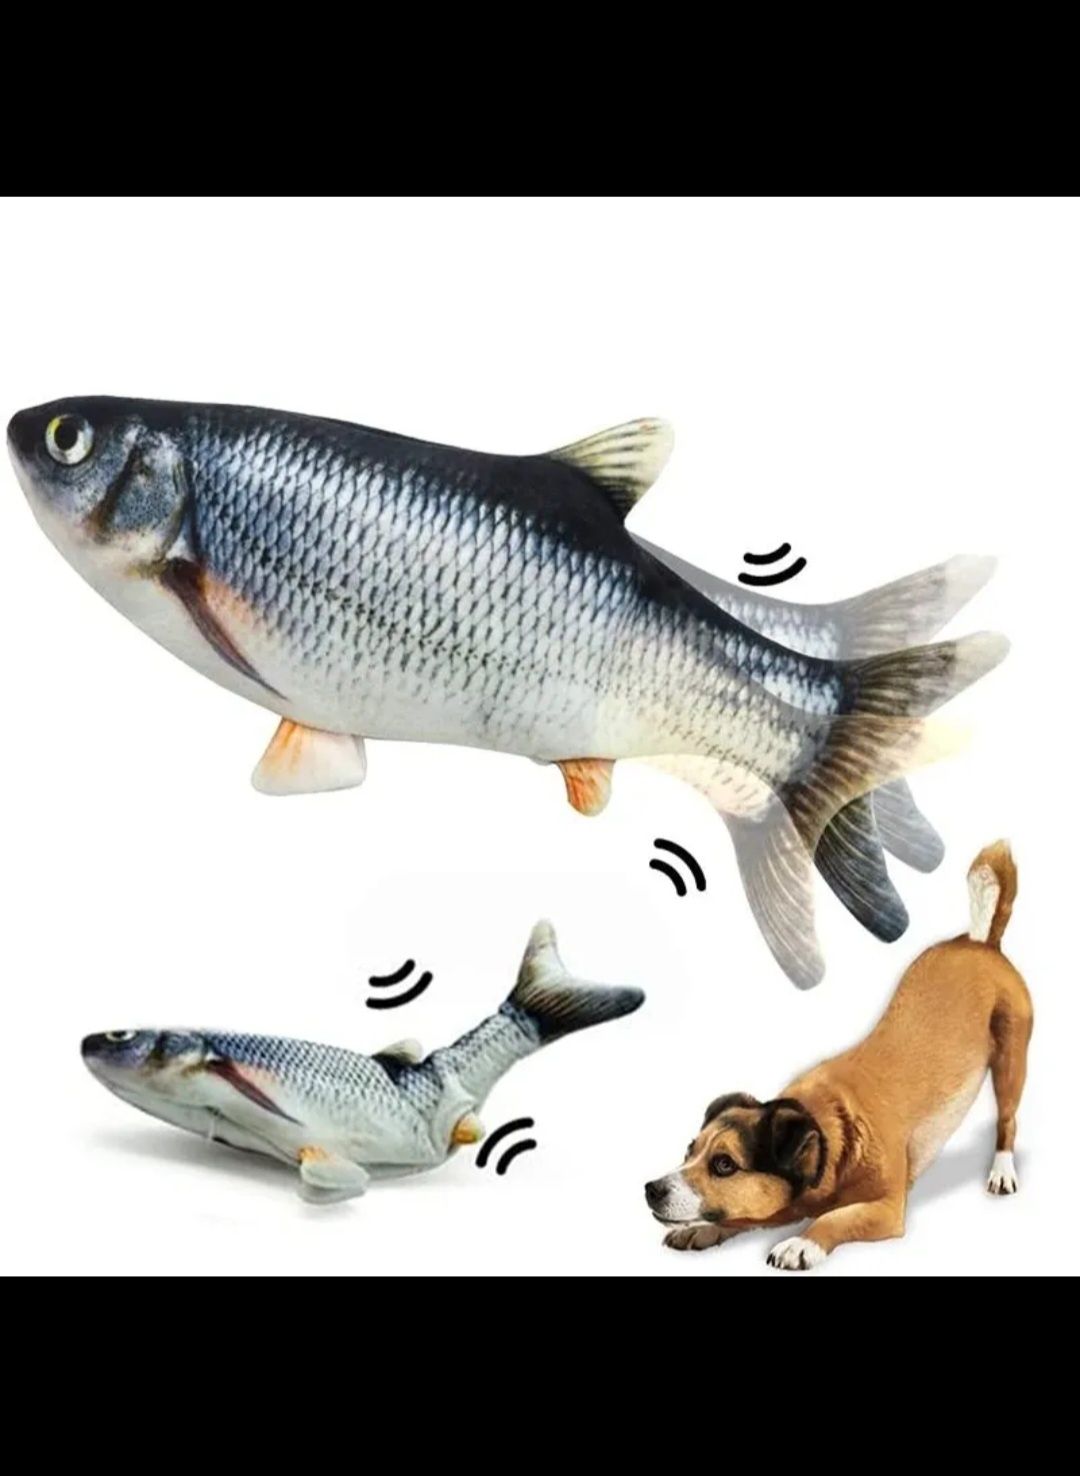 Nowa Ryba interaktywna zabawka dla kota I psa na USB. 

Specyfikacja